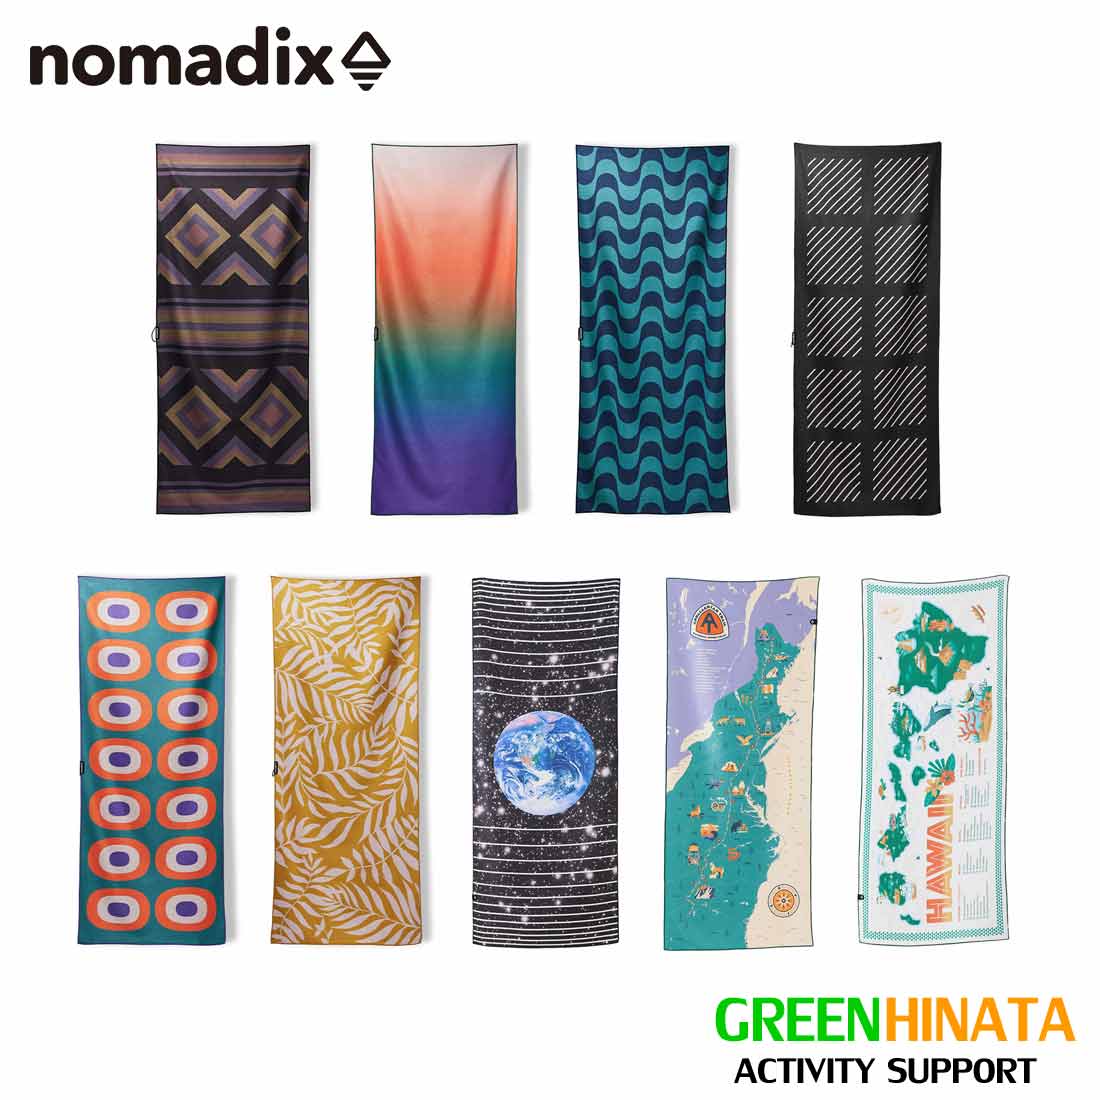  ノマディックス タオル バスタオル Nomadix THE NOMADIX TOWEL